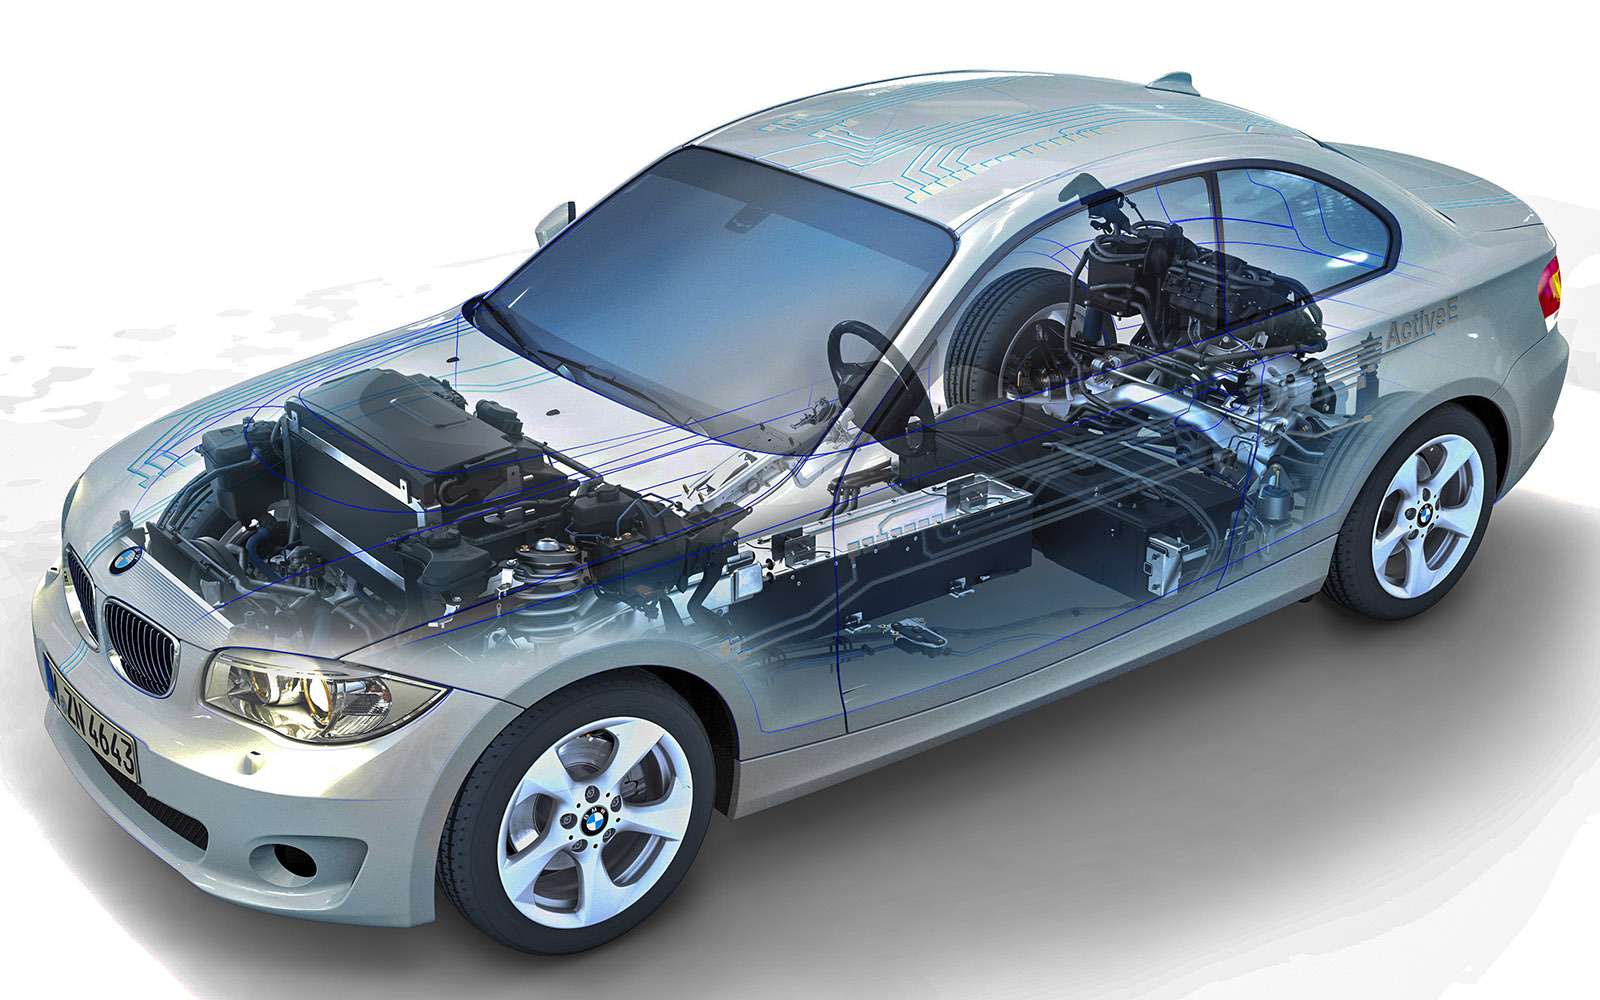 Мощность двигателя
электромобиля BMW ActiveE – 125 кВт, время разгона до 100 км/ч – девять секунд. А вот запас хода пока всего 160 км.